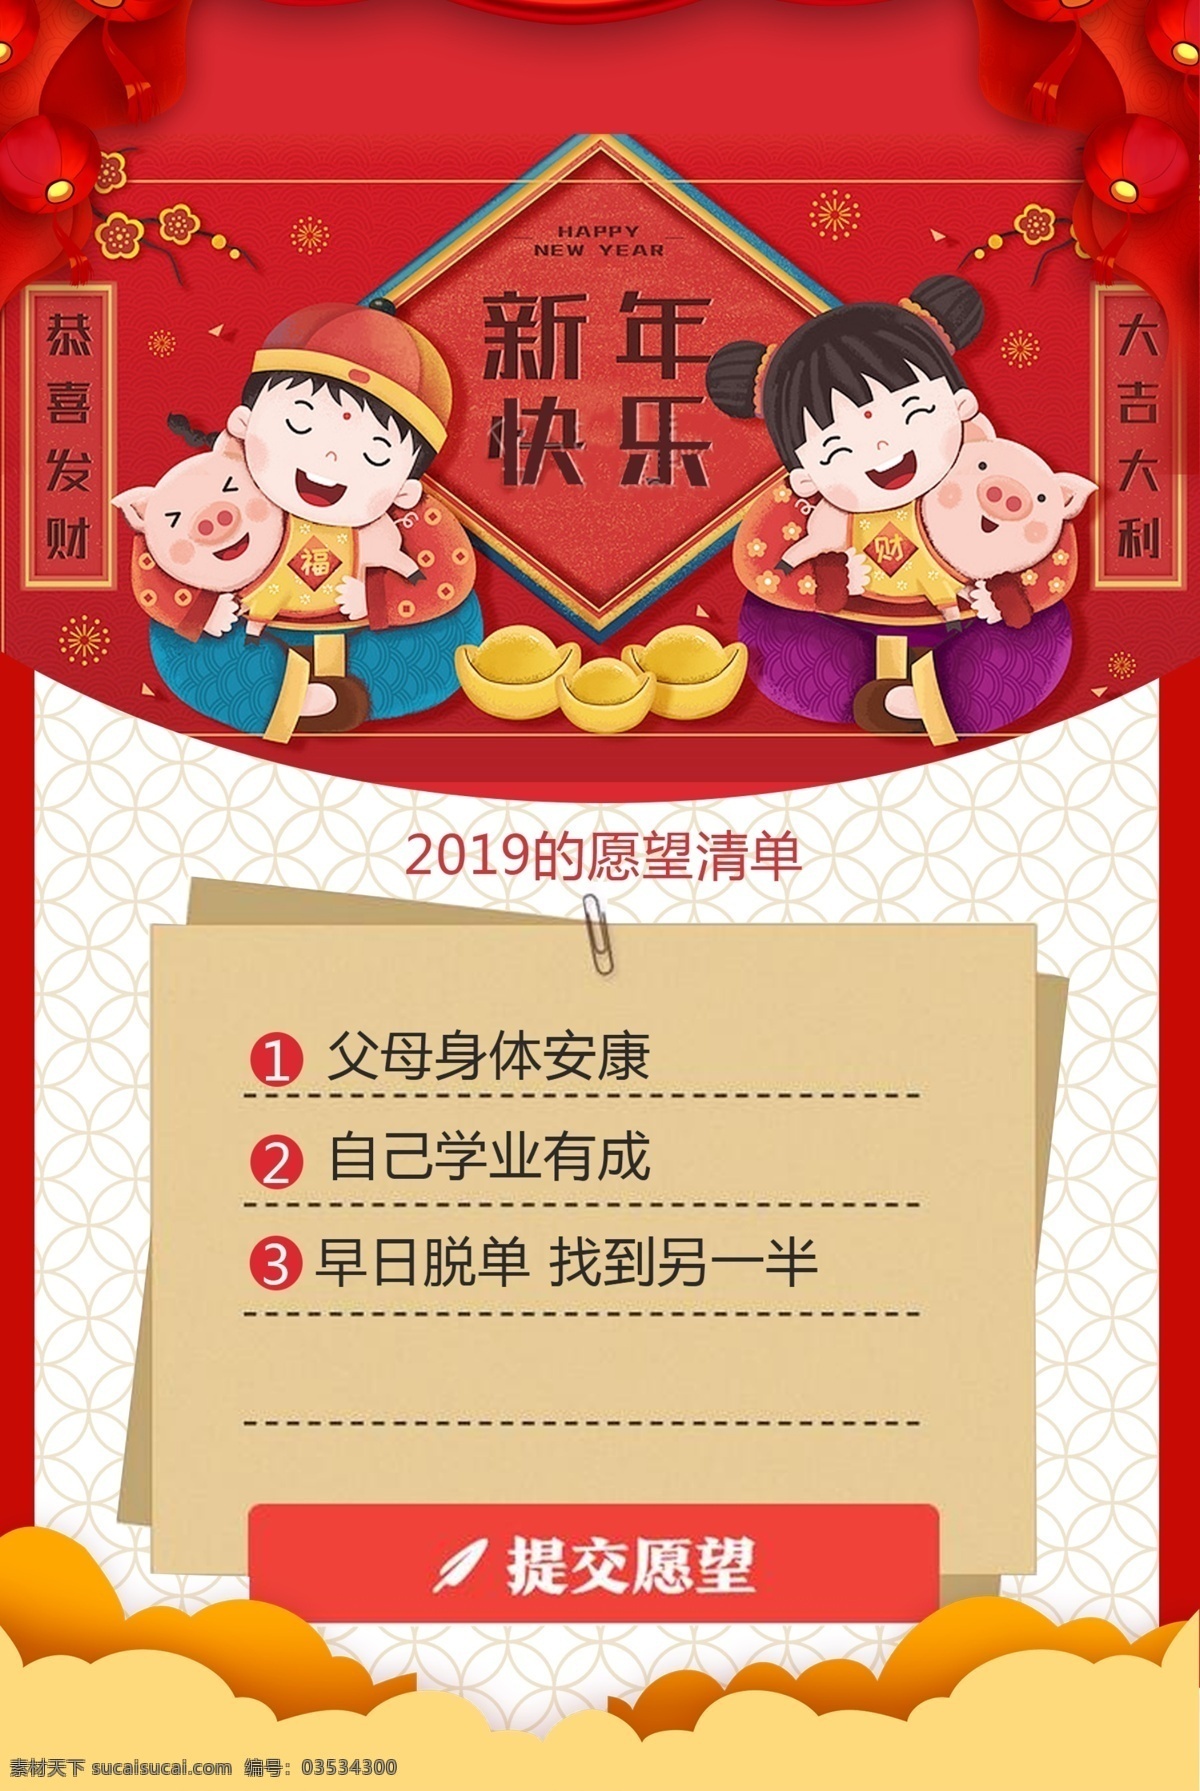 新年愿望清单 新年 愿望 清单 春节 海报素材 分层